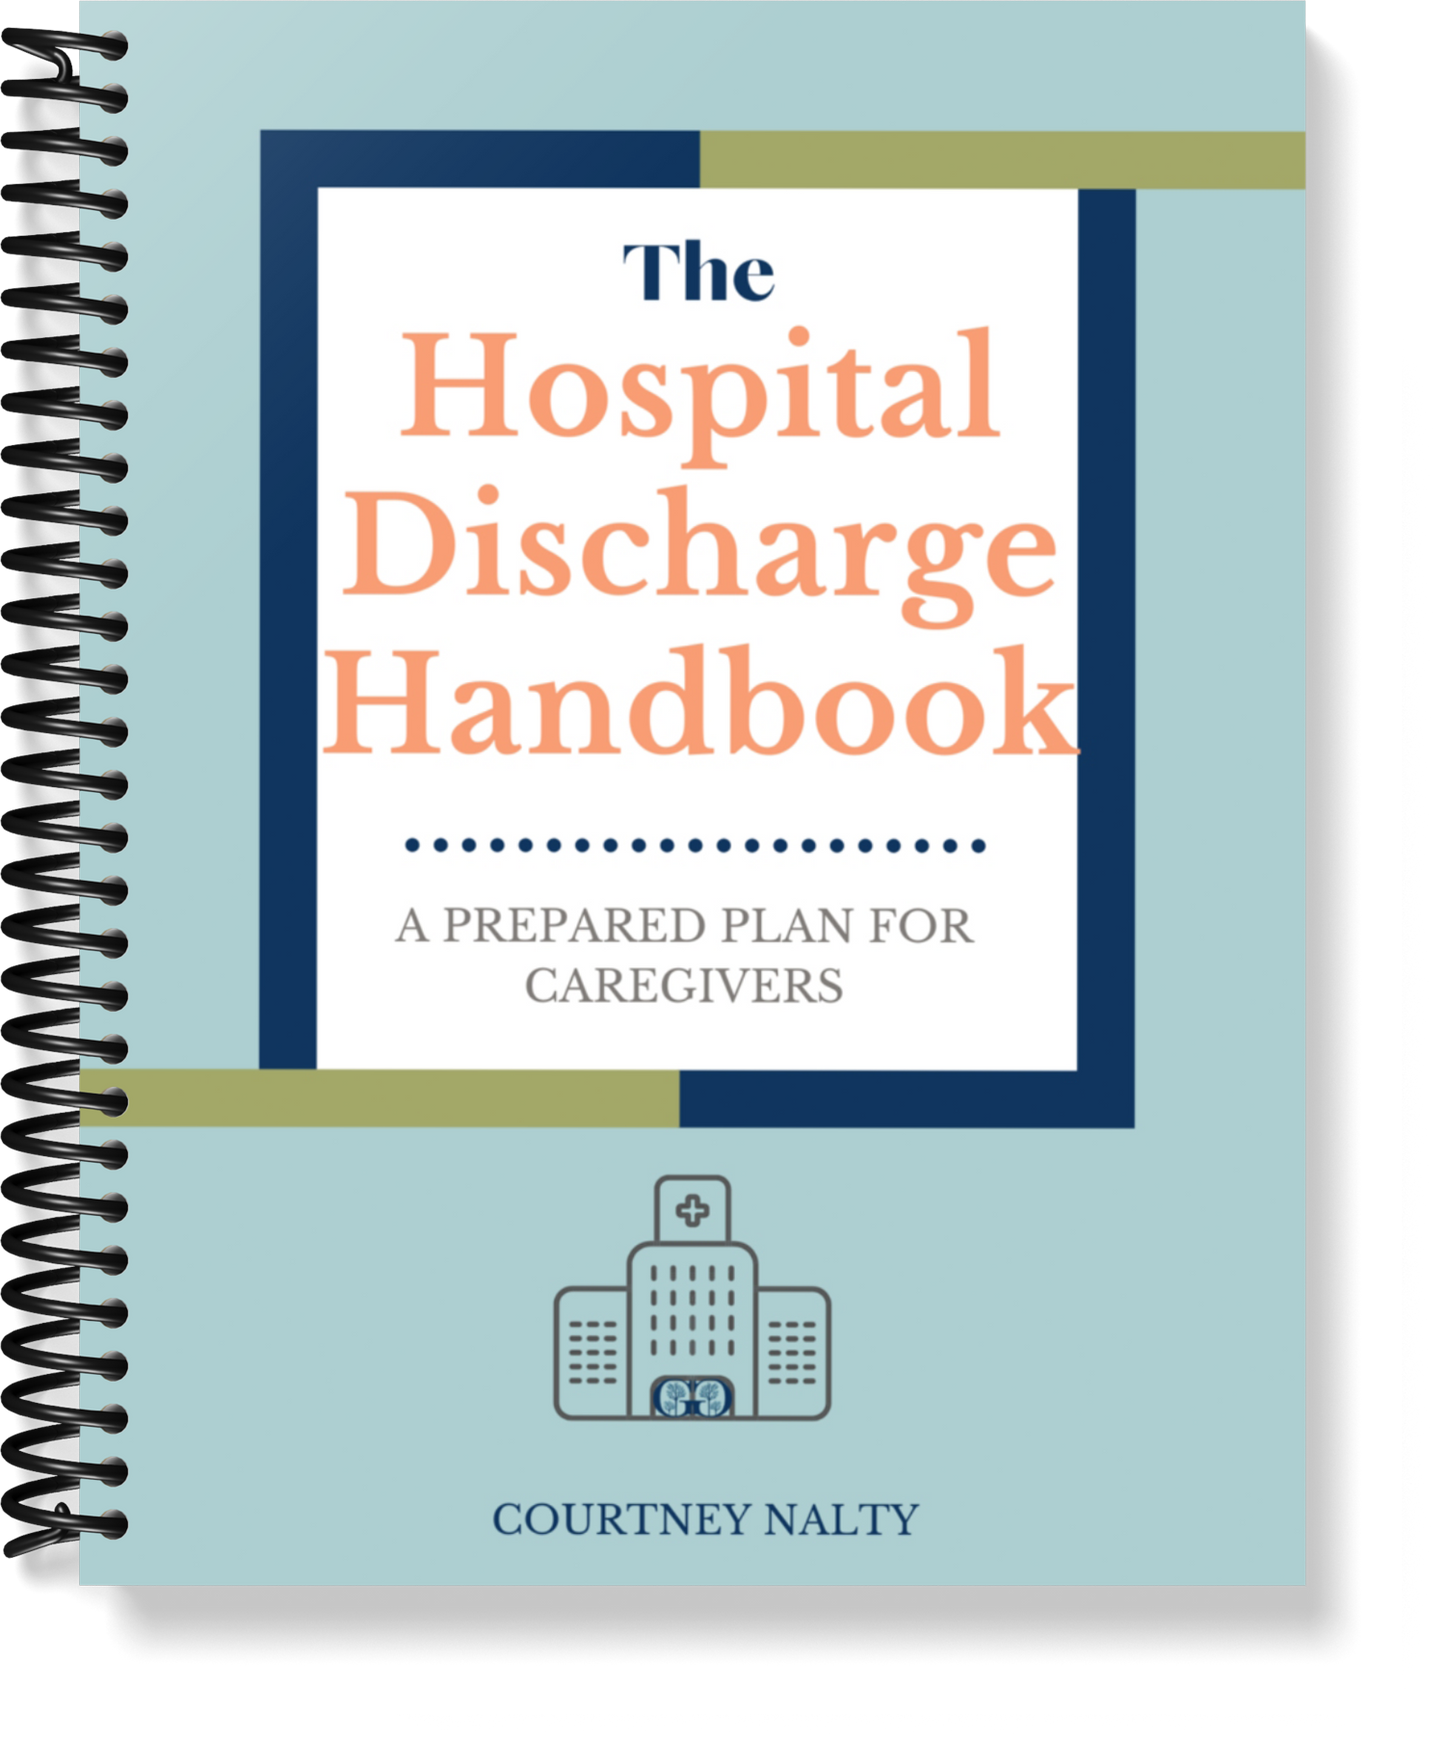 The Hospital Discharge Handbook- Website